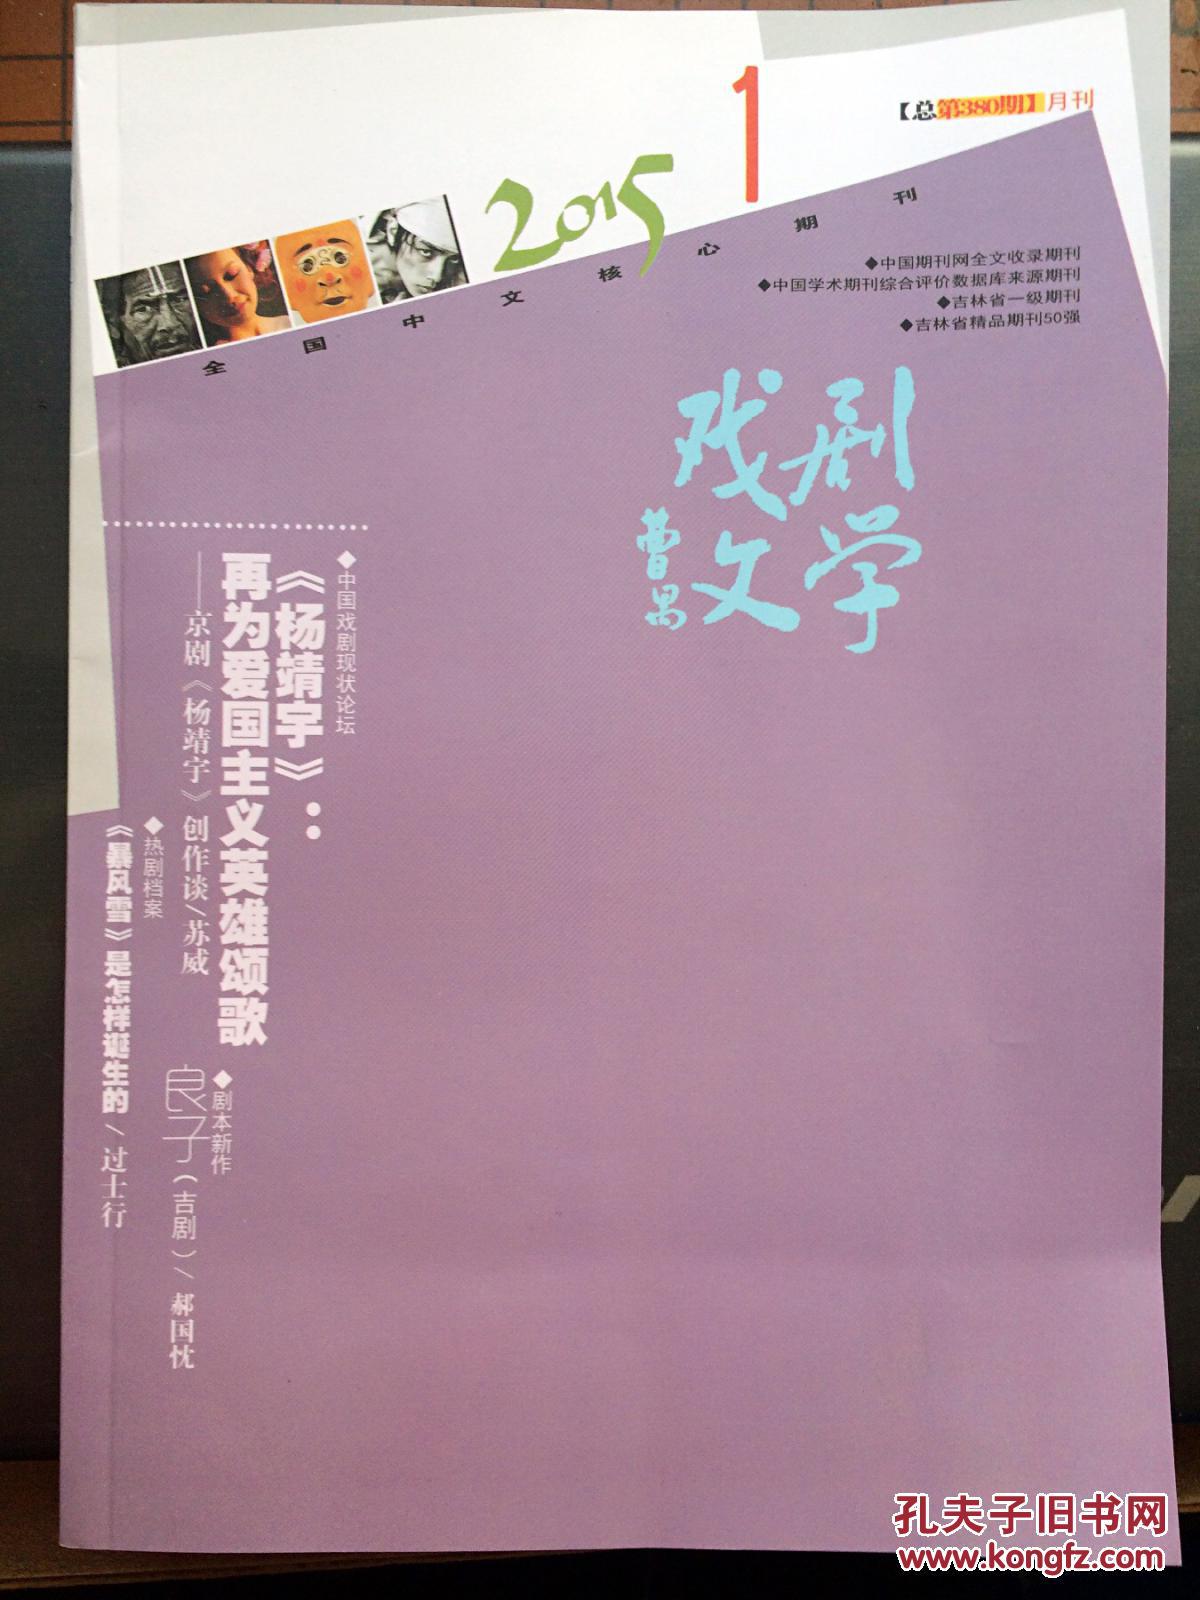 【图】期刊:戏剧文学 2015-1_价格:10.00